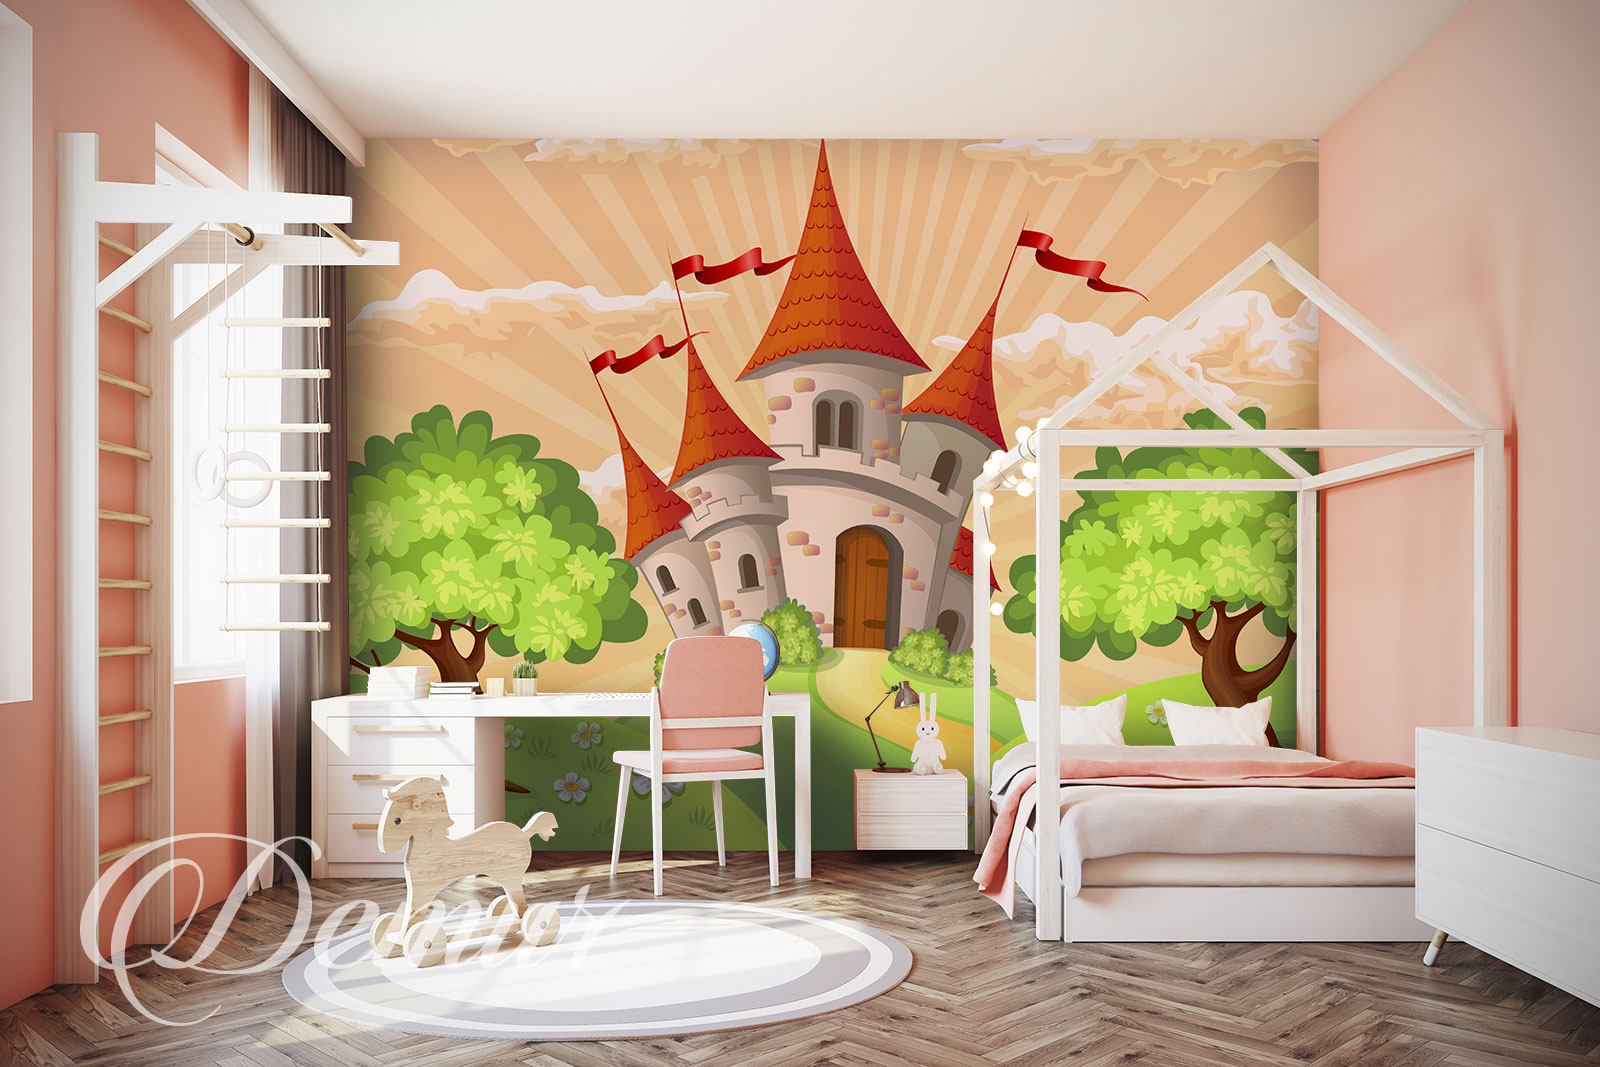 Fototapeta Zamek - Pomysł na ścianę w pokoju dziecięcym - Demur